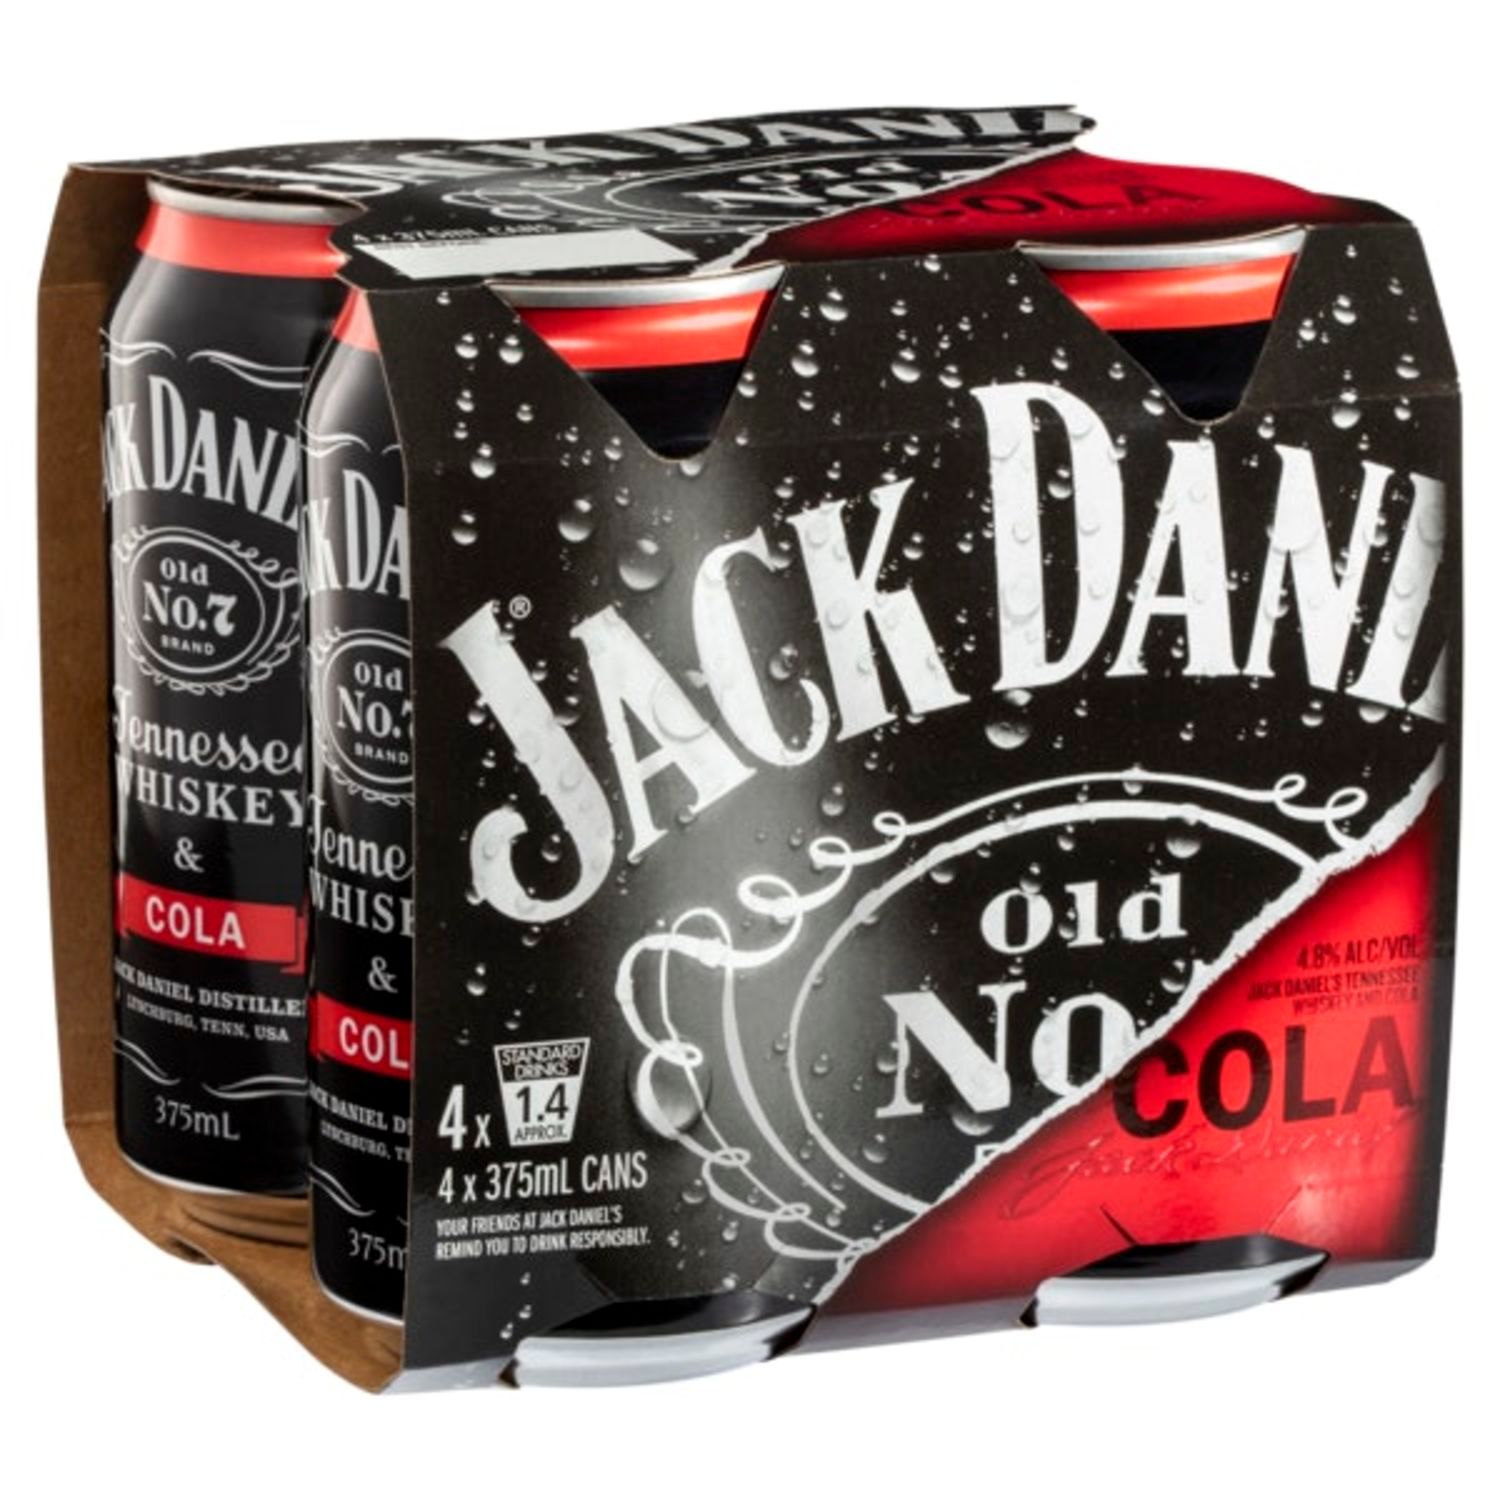 Jack Daniel's & Cola Can 375mL<br /> <br />Alcohol Volume: 4.80%<br /><br />Pack Format: 4 Pack<br /><br />Standard Drinks: 1.4</br /><br />Pack Type: Can<br />